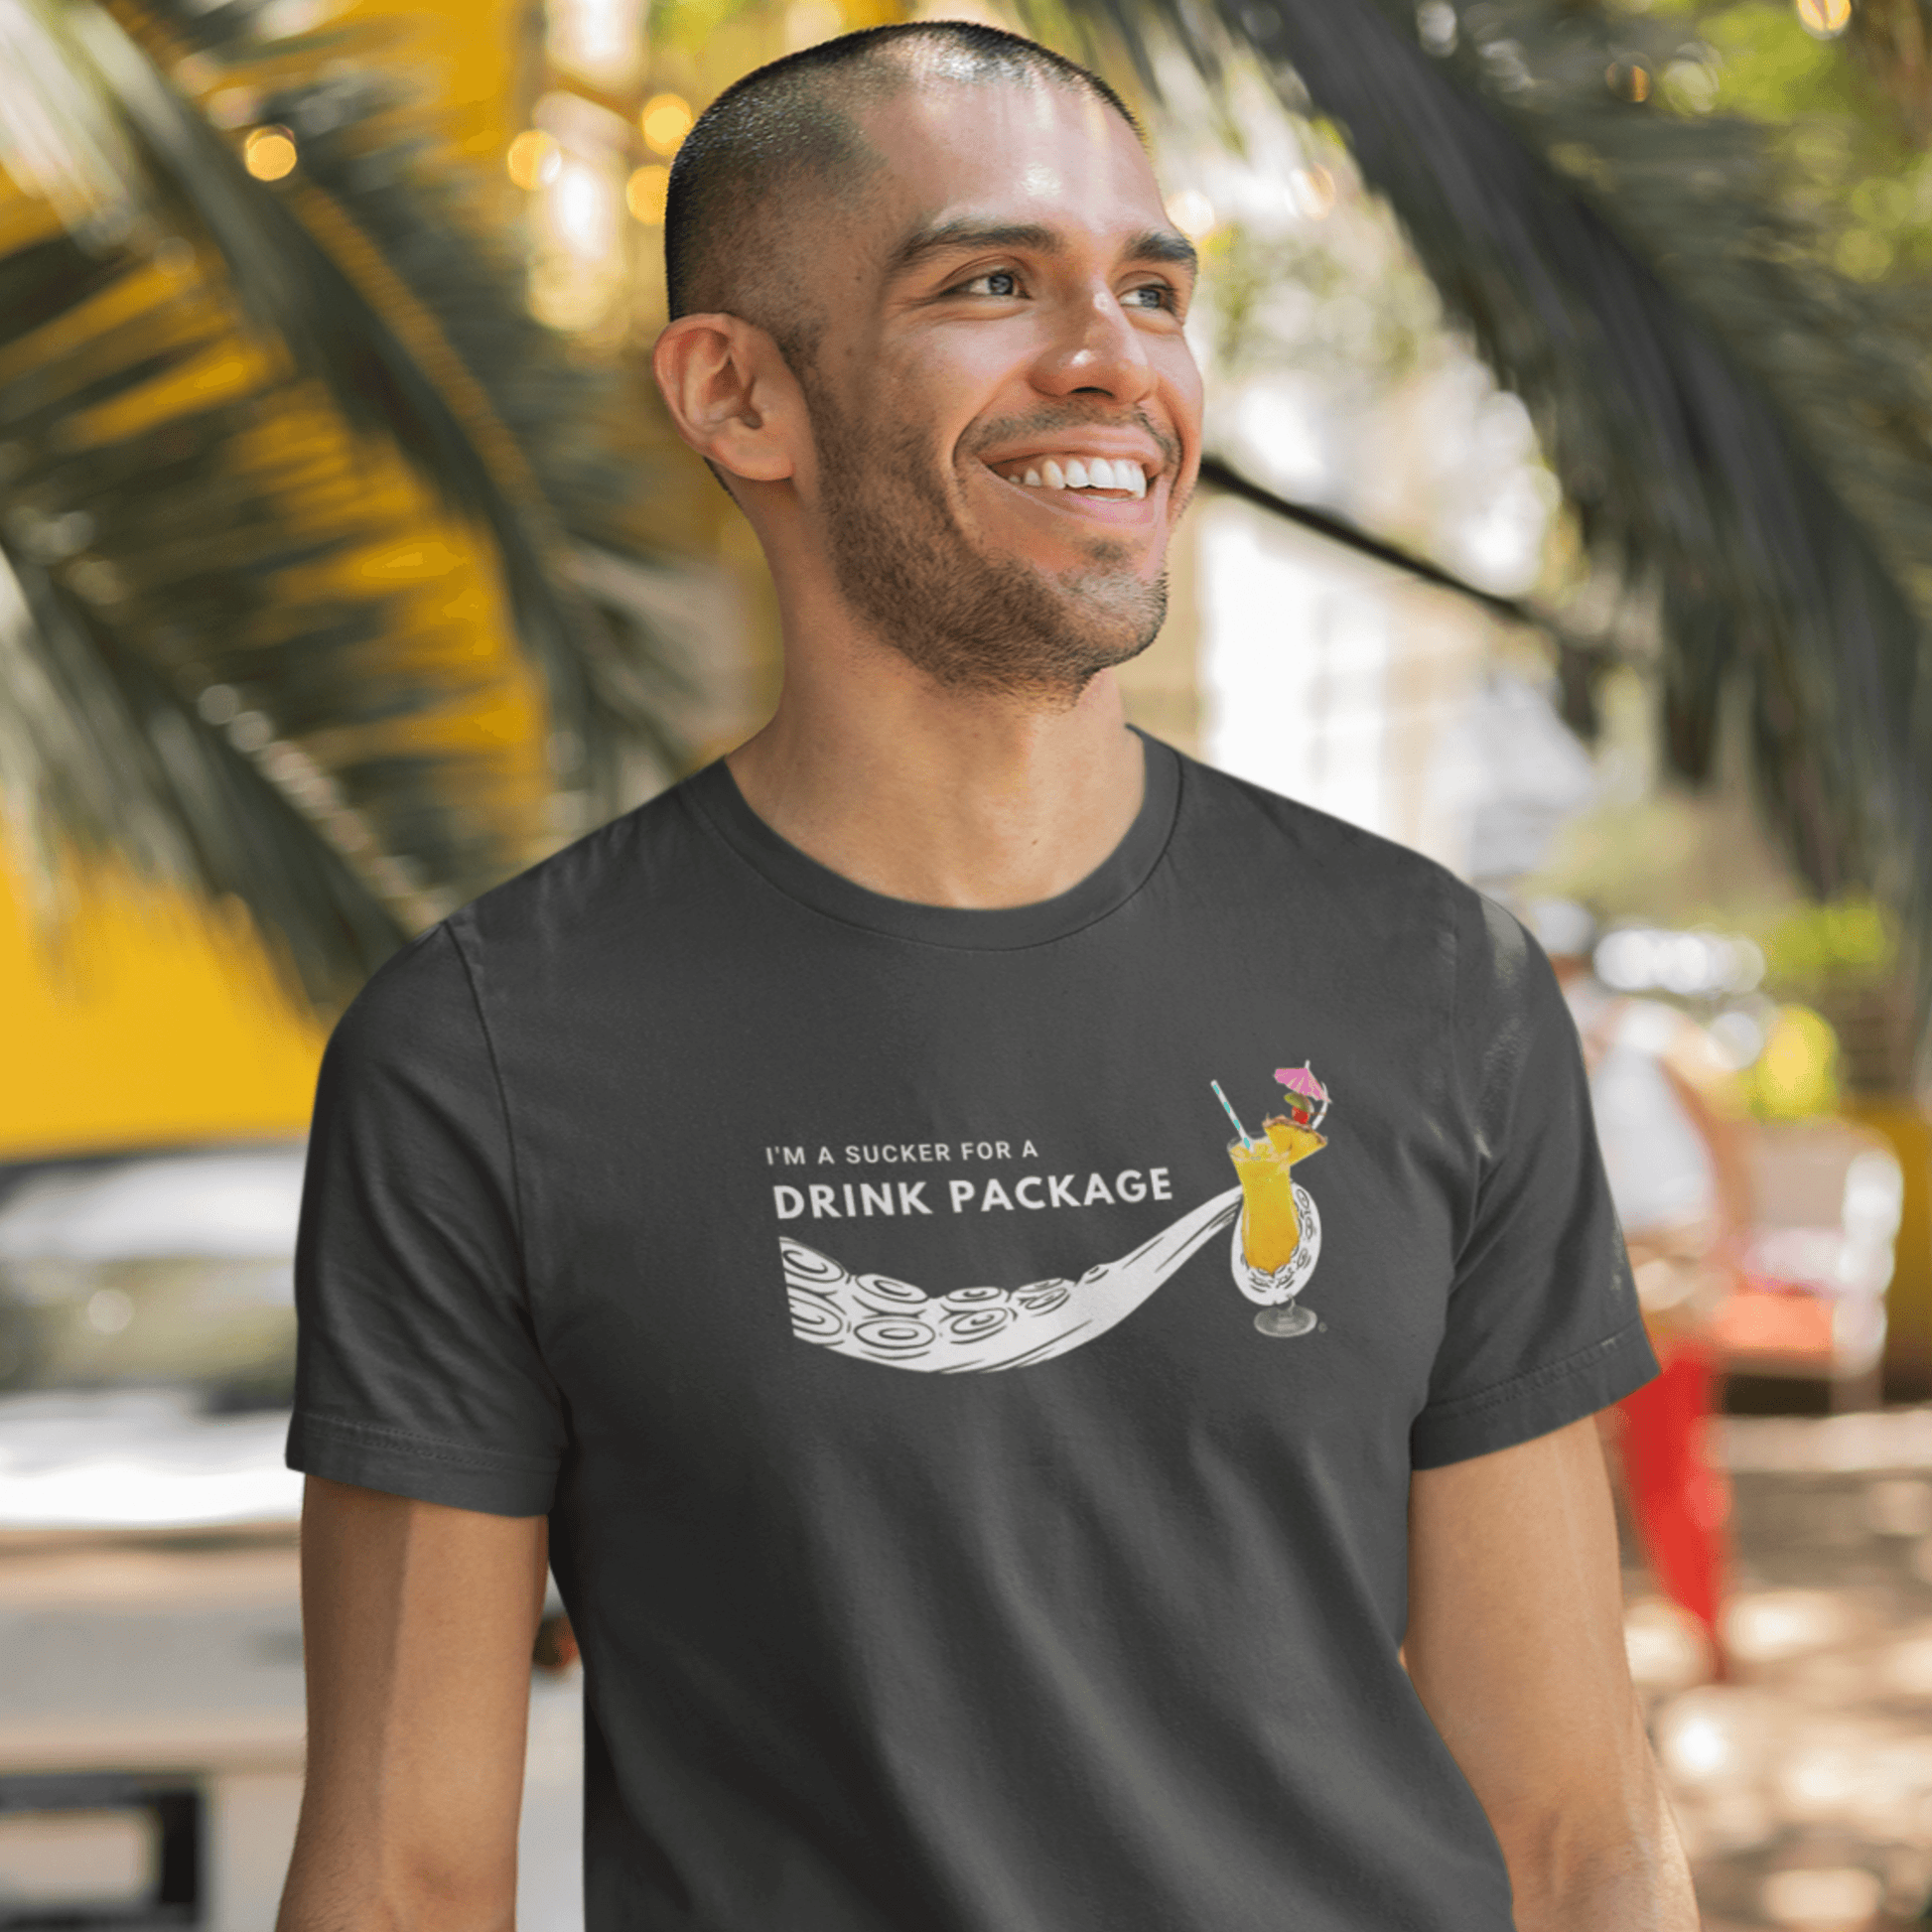 smiling man wearing cruise shirt